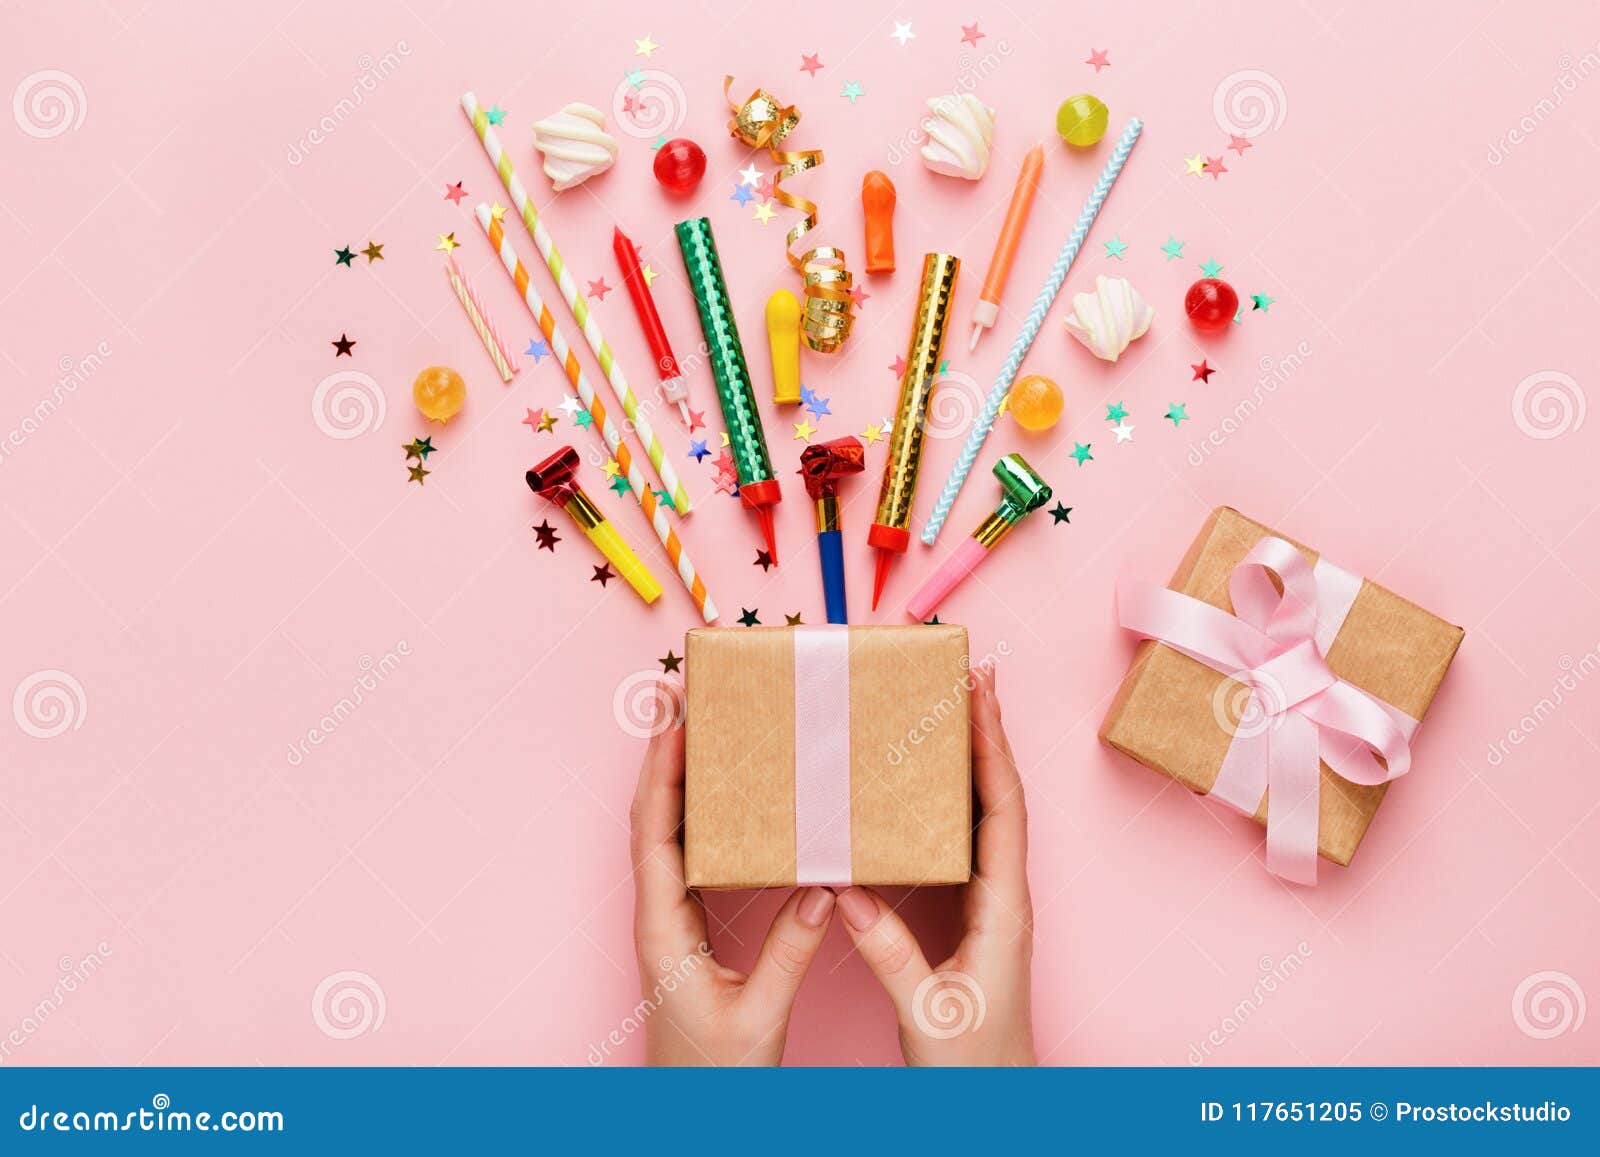 Fond De Fête D'anniversaire Avec Le Cadeau Et Les Confettis Image